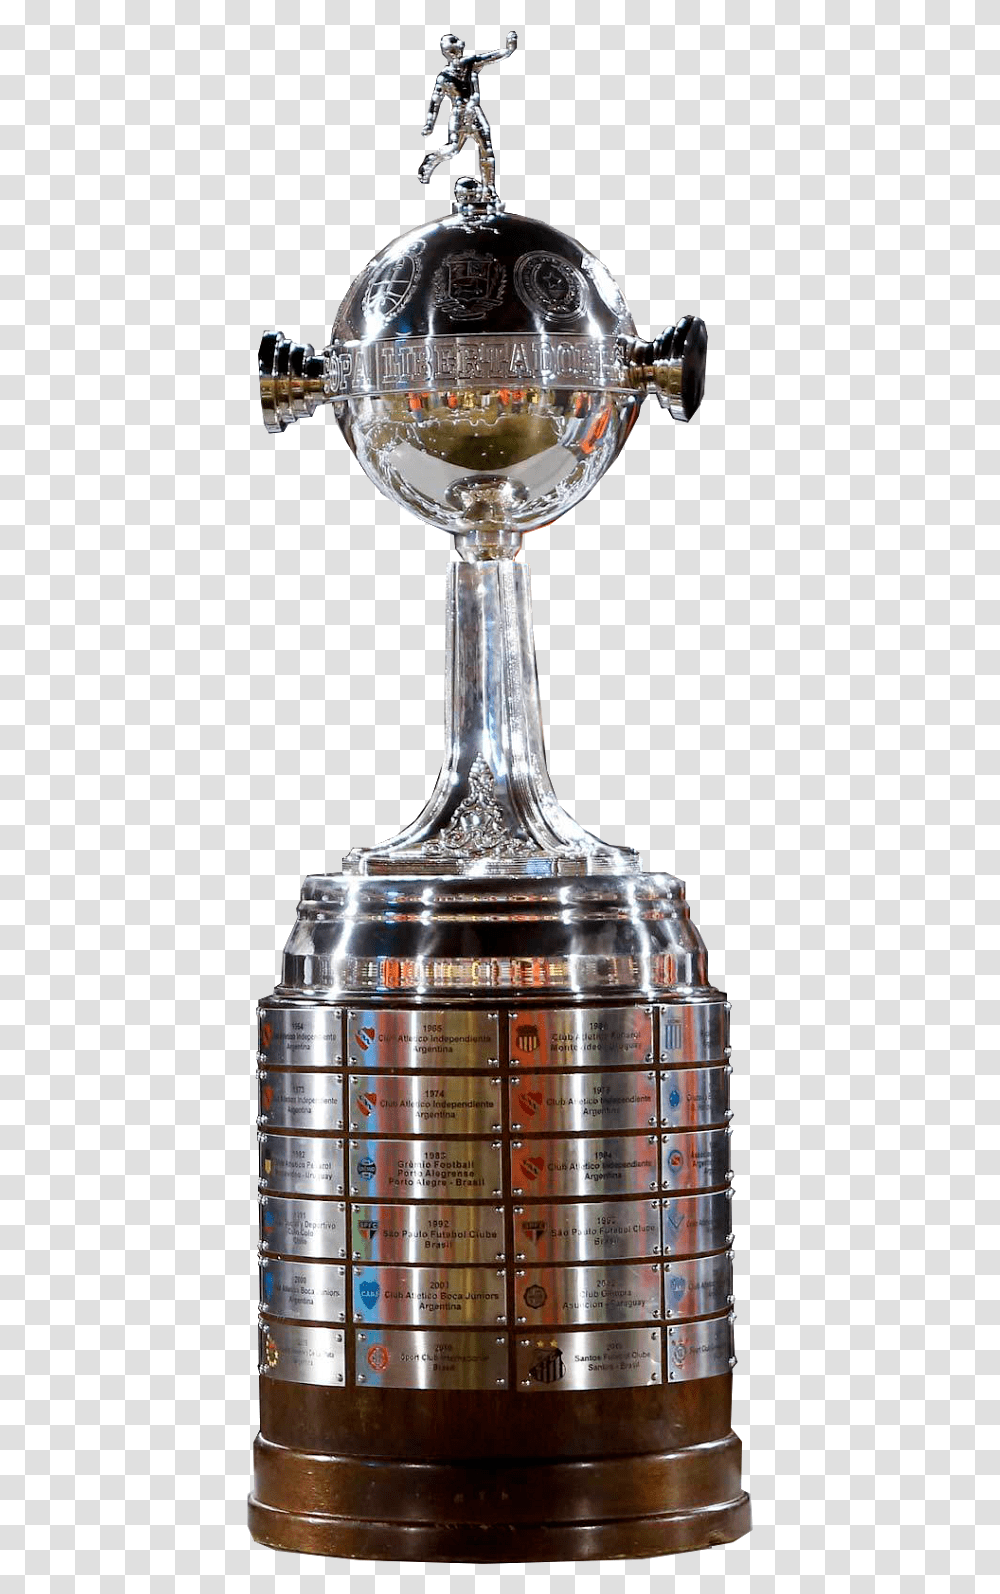 Infografia De La Copa Libertadores 2019, Trophy, Lamp Transparent Png